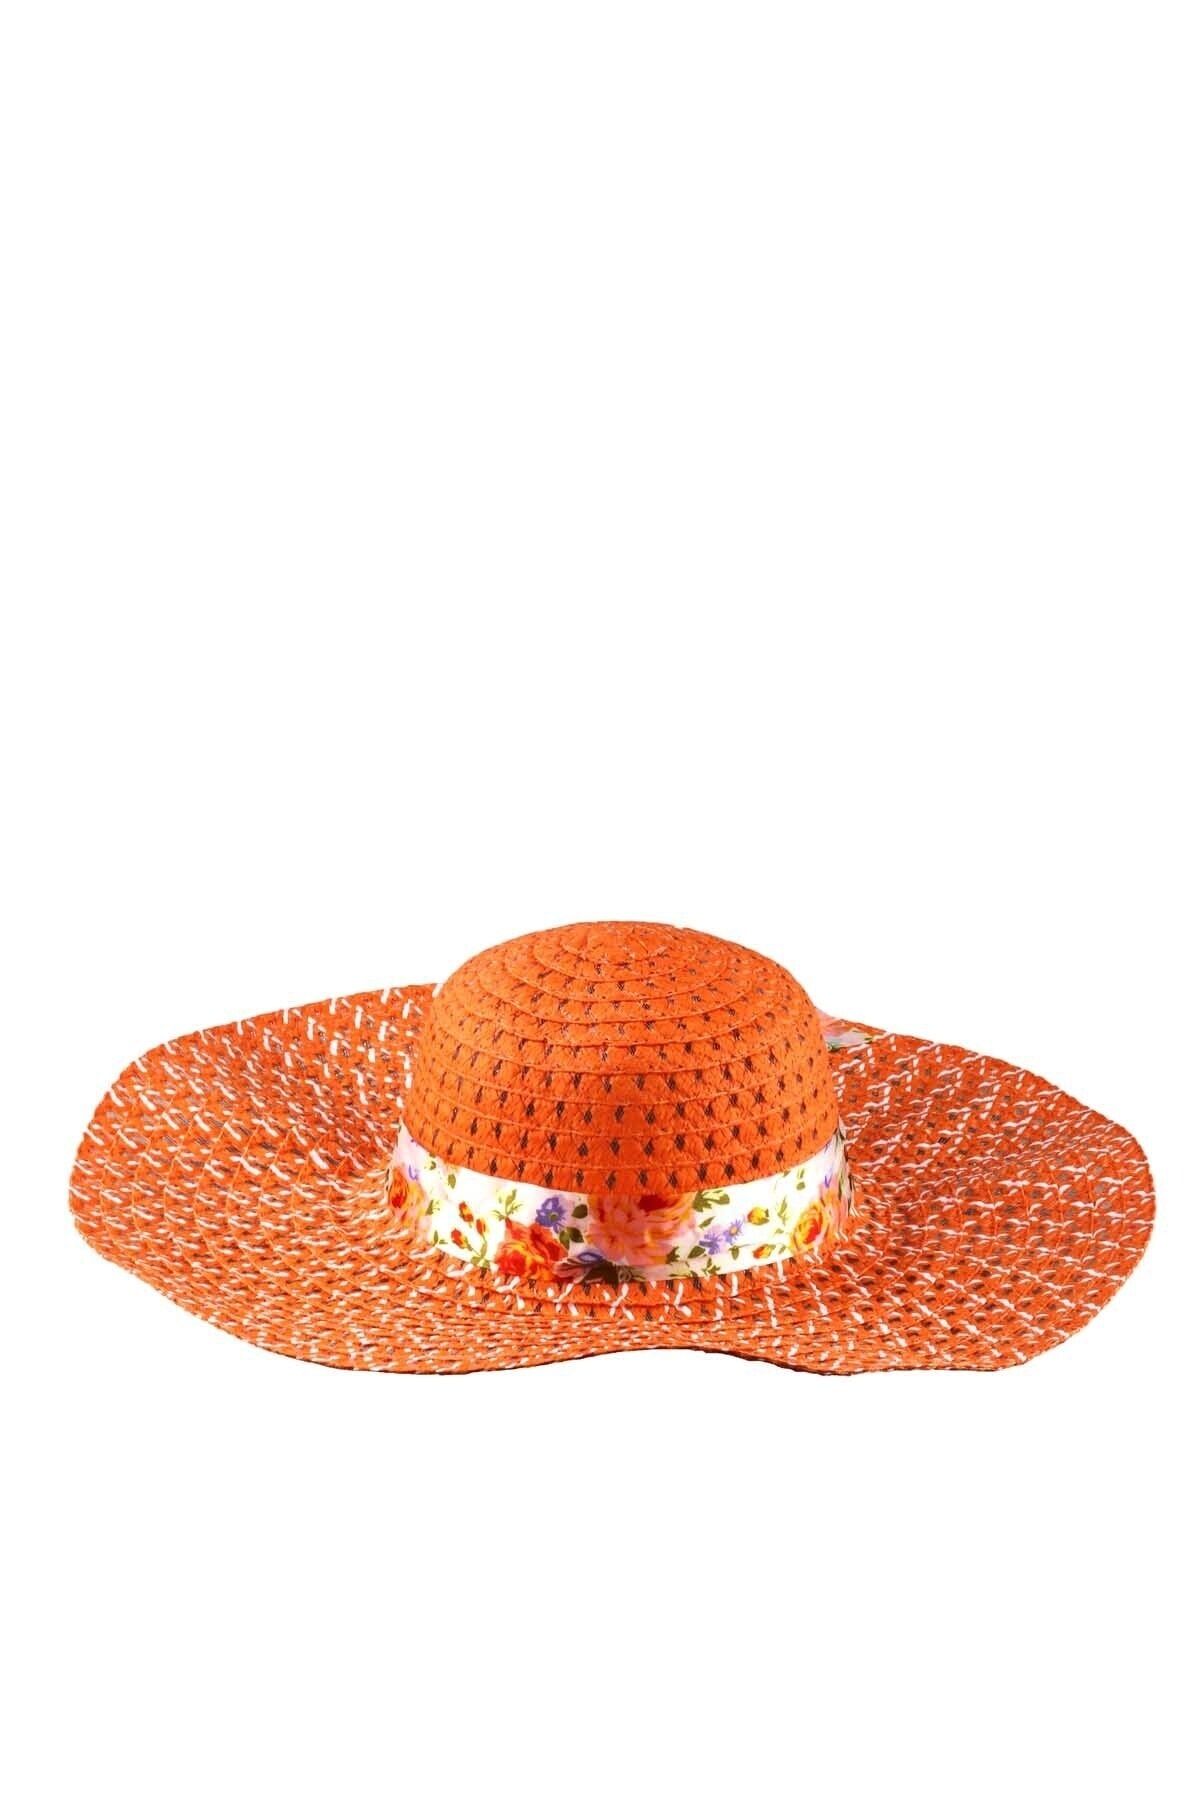 Beoje Kadın Şapka Hasır Çiçekli Kuşaklı Akdsp-0037